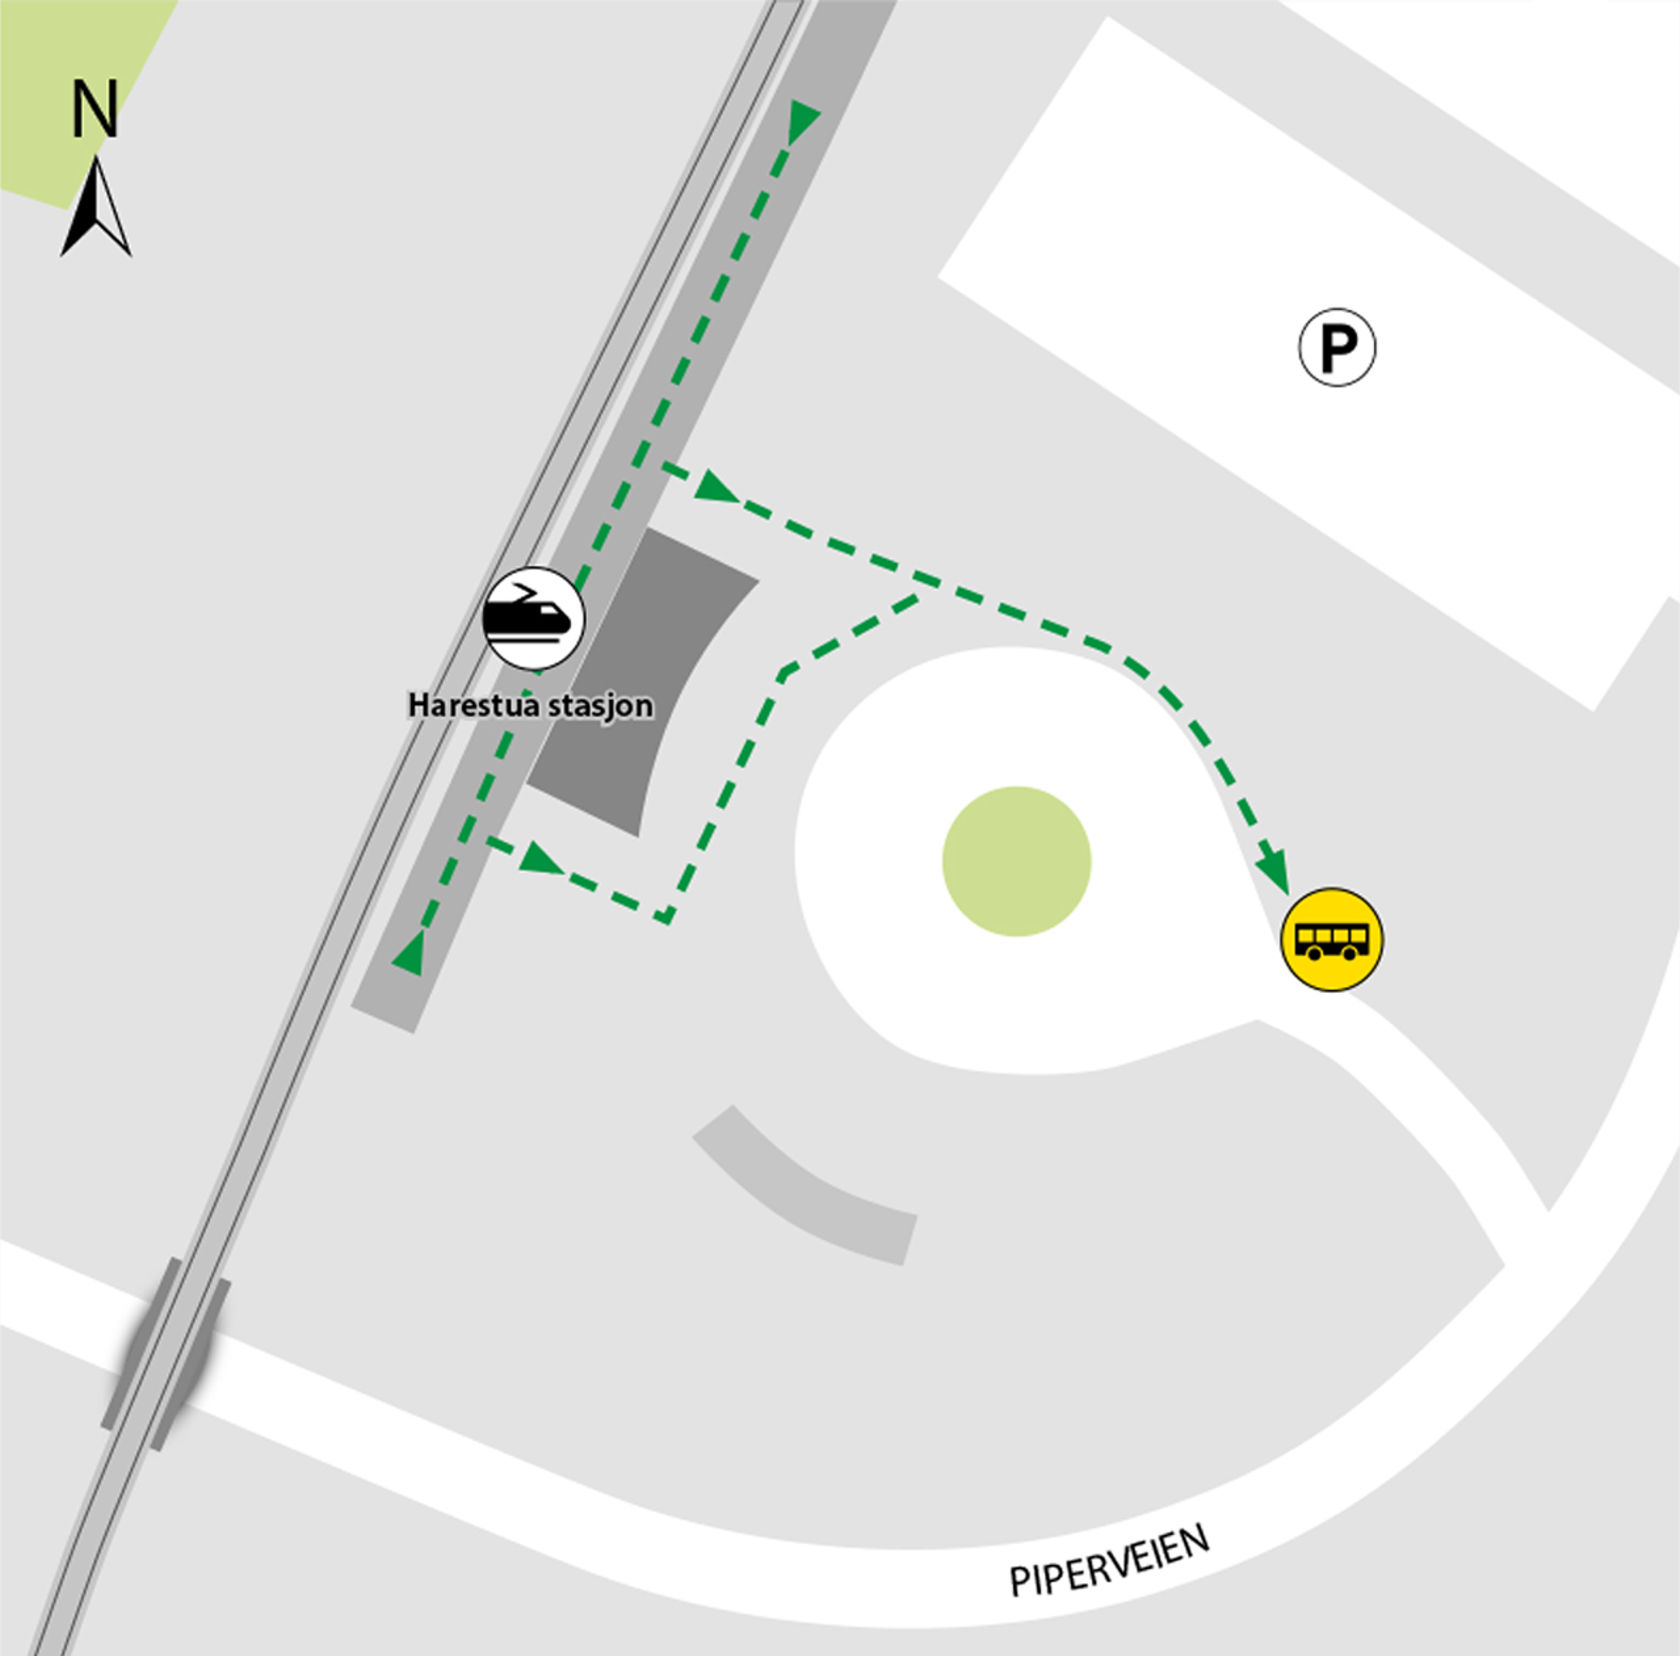 Kartet viser at bussene kjører fra bussholdeplassen Harestua stasjon.